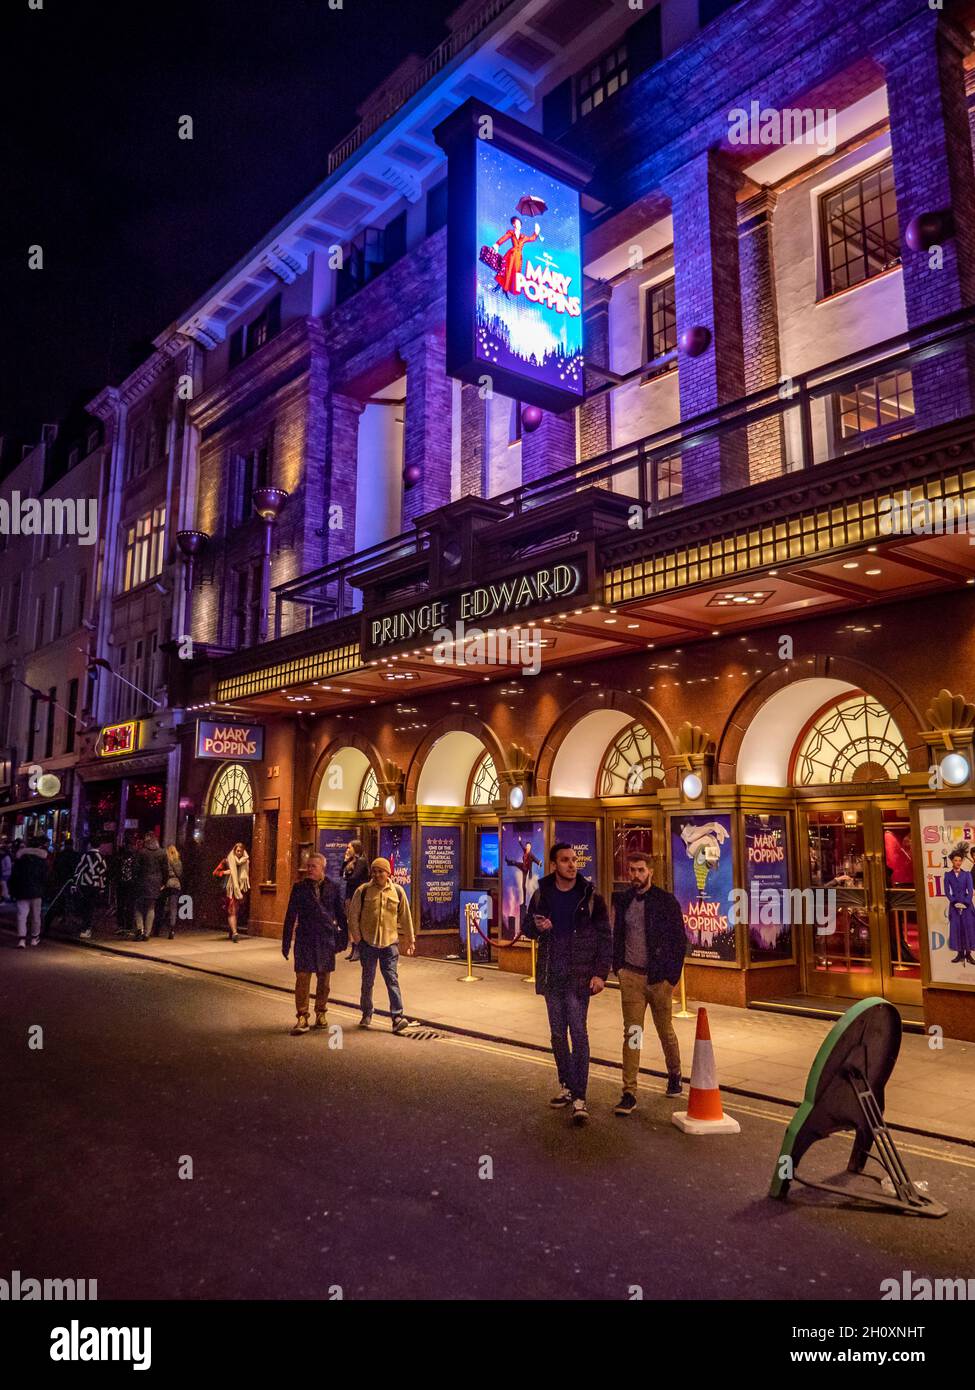 Mary Poppins, Prince Edward Theatre, Londres.Les clients du quartier des théâtres du West End quittent une production sur scène du populaire film Disney. Banque D'Images